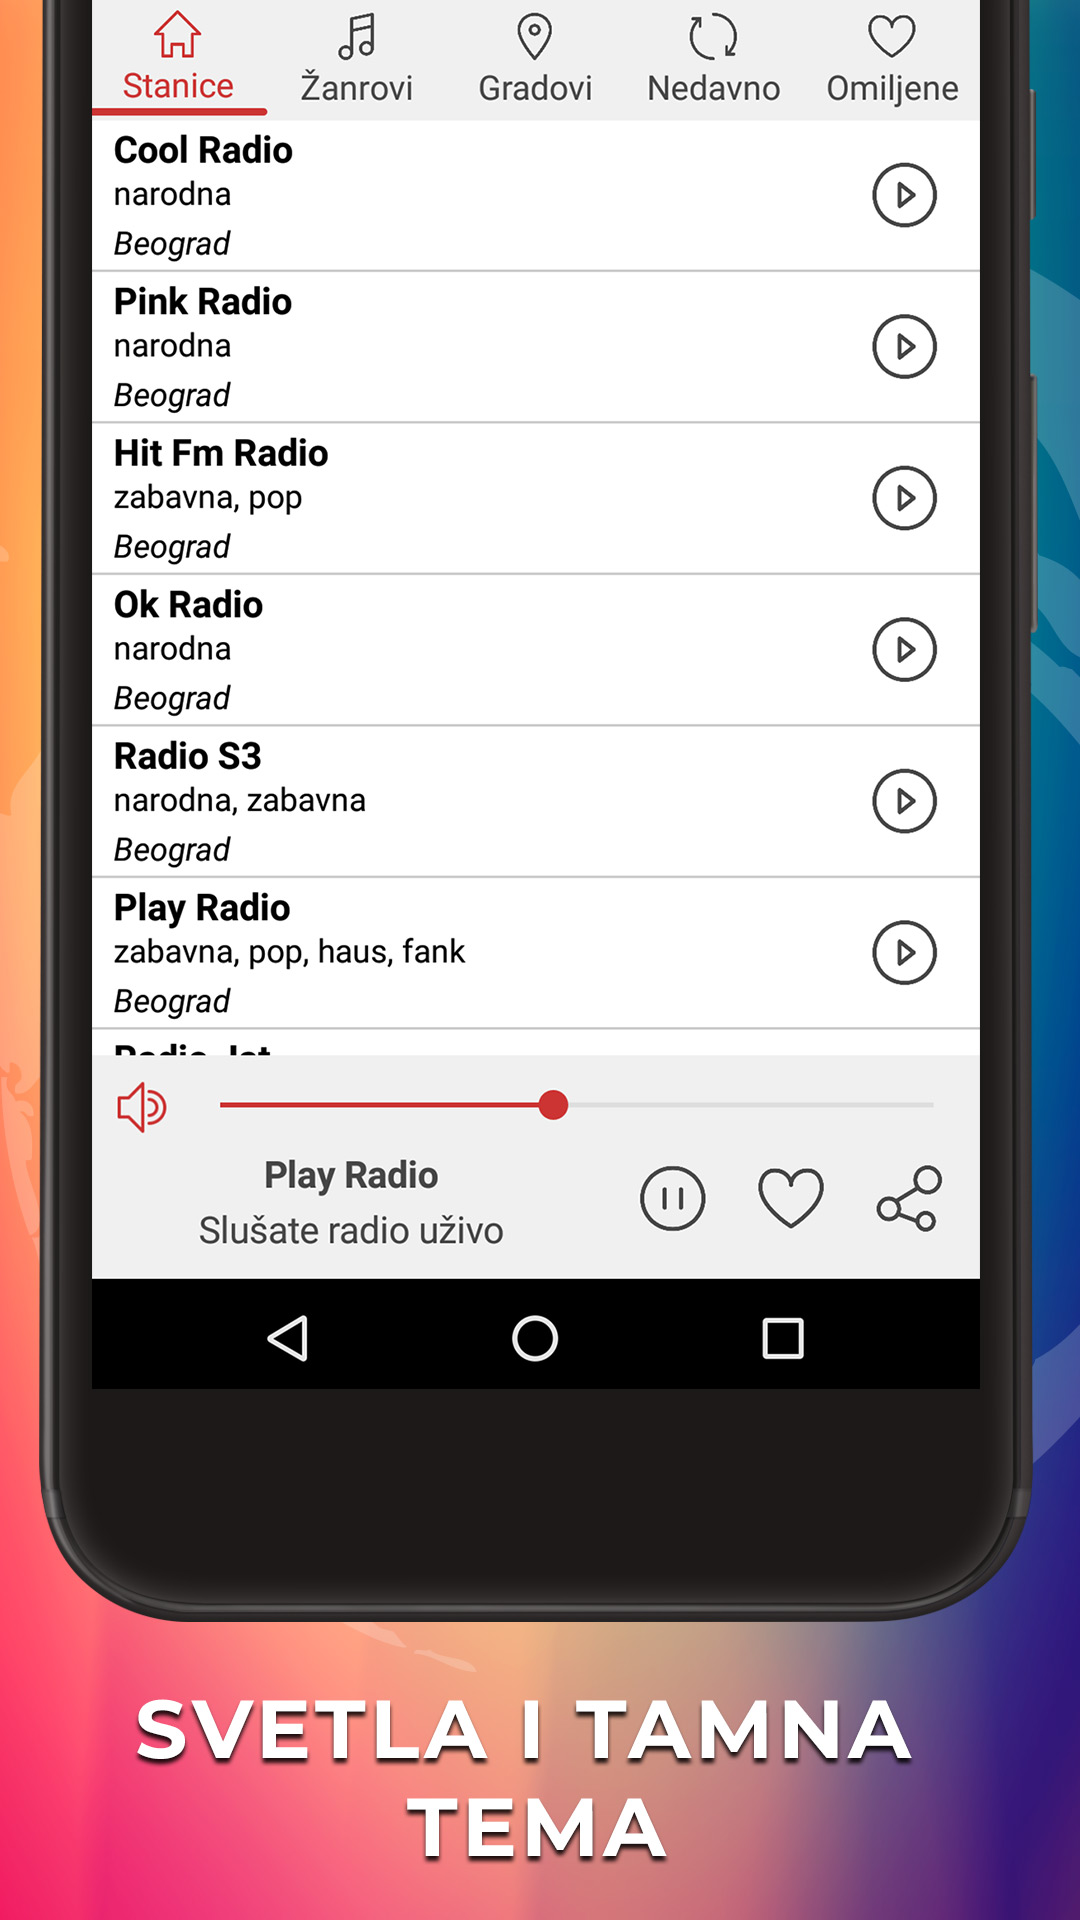 Radio Stanice Srbije Uživo FM APK 1.3.6 Download for Android – Download  Radio Stanice Srbije Uživo FM APK Latest Version - APKFab.com